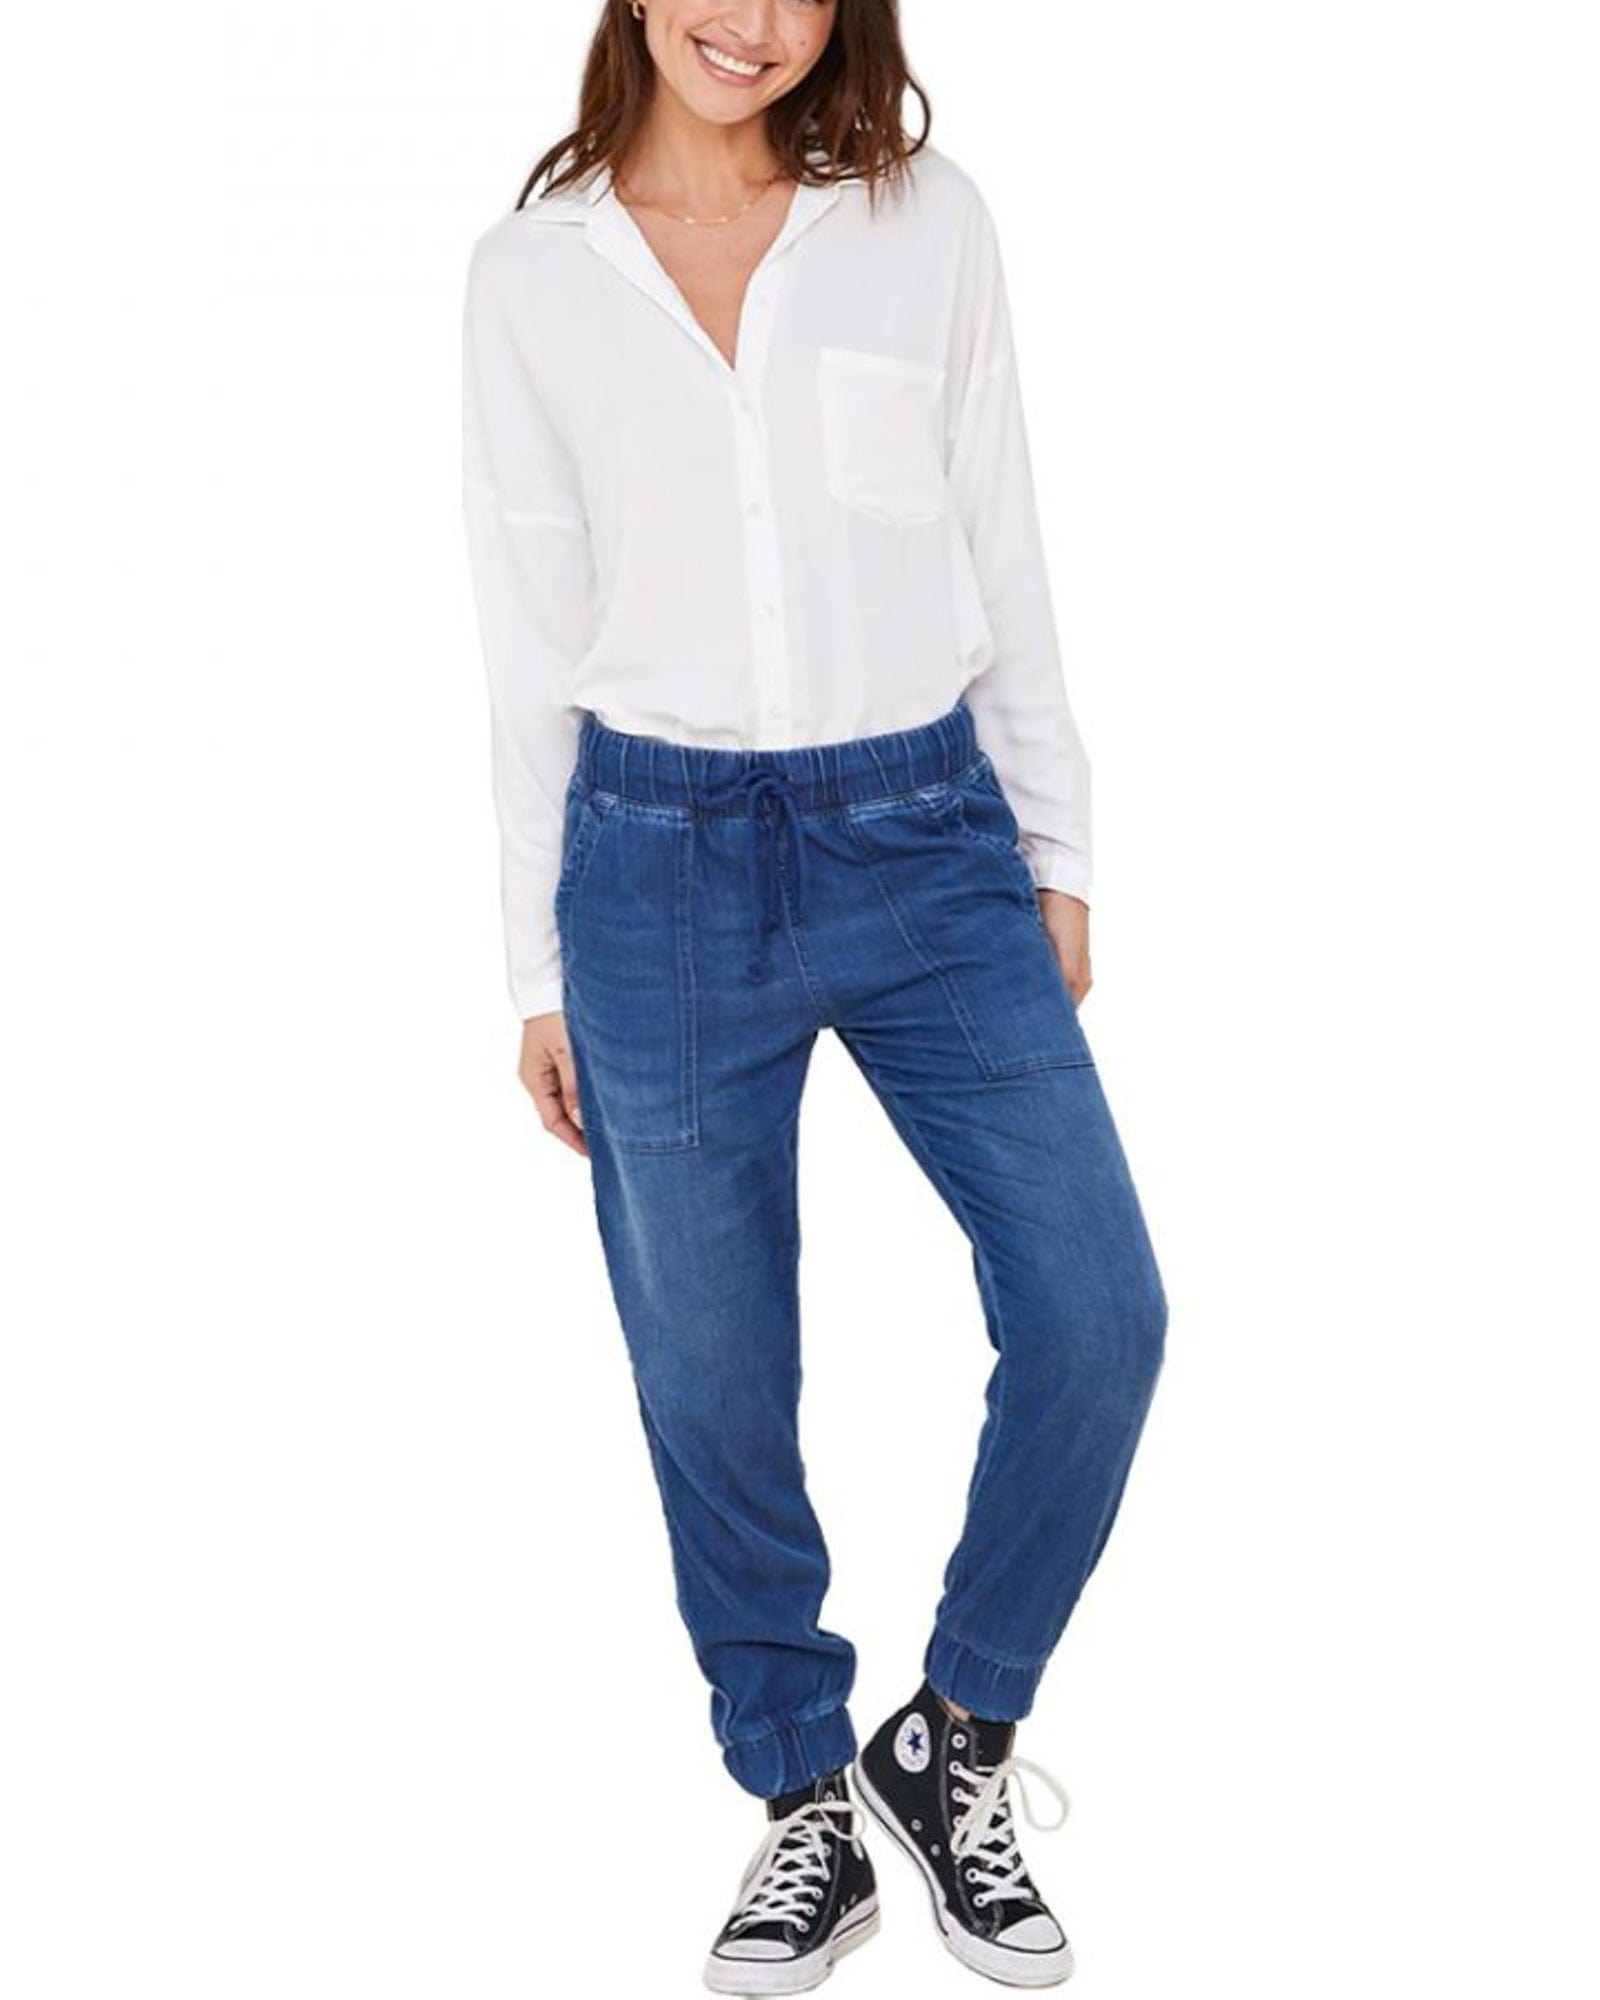 Desigual Exotic Baggy Jogger Jeans Womens 6 Embroidered Medium Wash Denim |  Medium wash denim, Jogger jeans, Denim shop